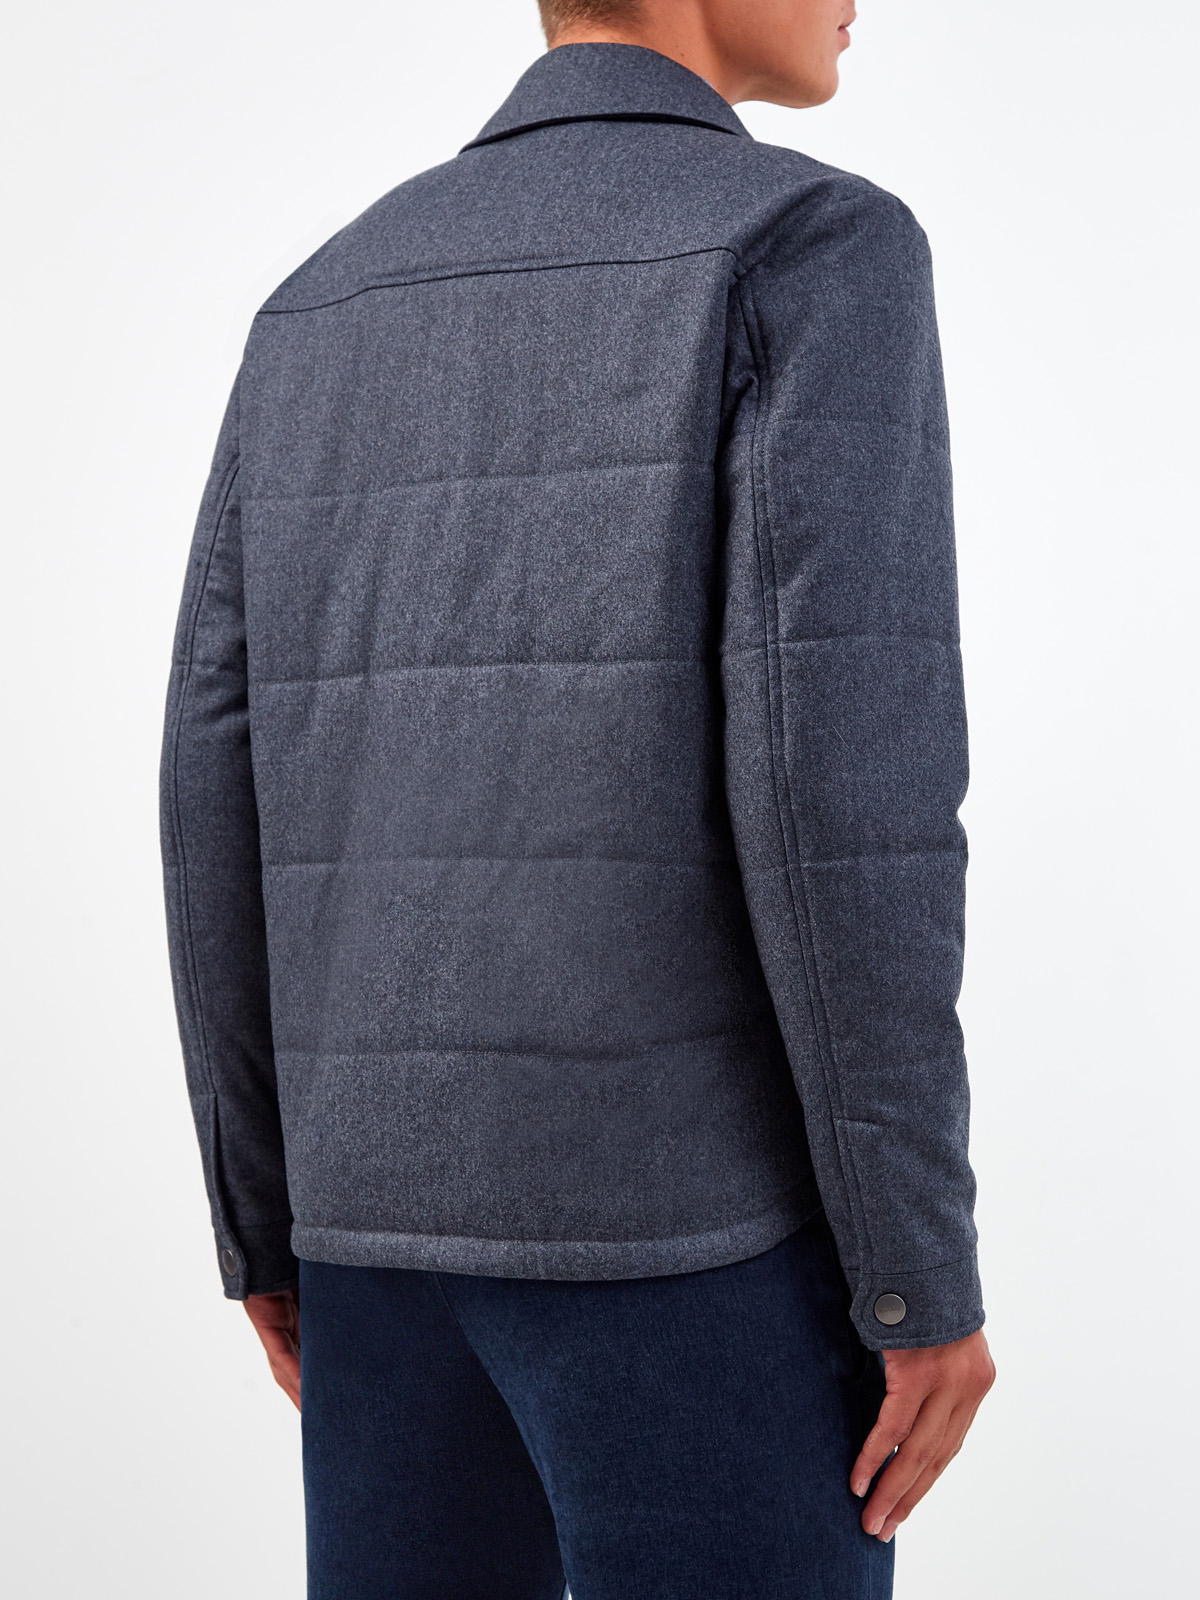 Двусторонняя куртка из плотной шерсти, кашемира и нейлона CANALI, цвет синий, размер 48;56;58 - фото 5